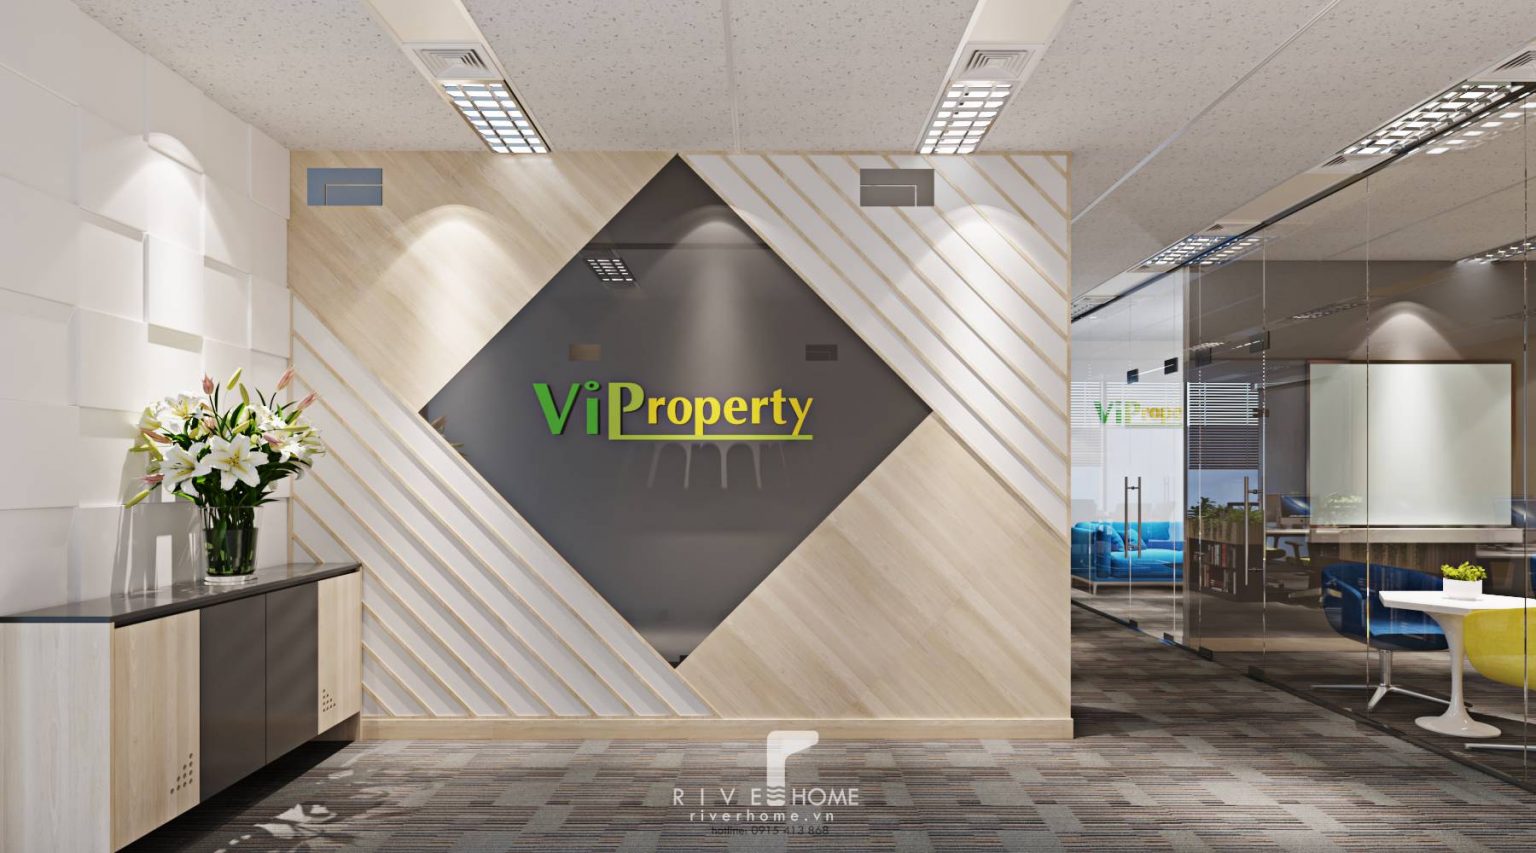 Nội thất văn phòng ViPropety 118m2 với sự hiện đại và năng động